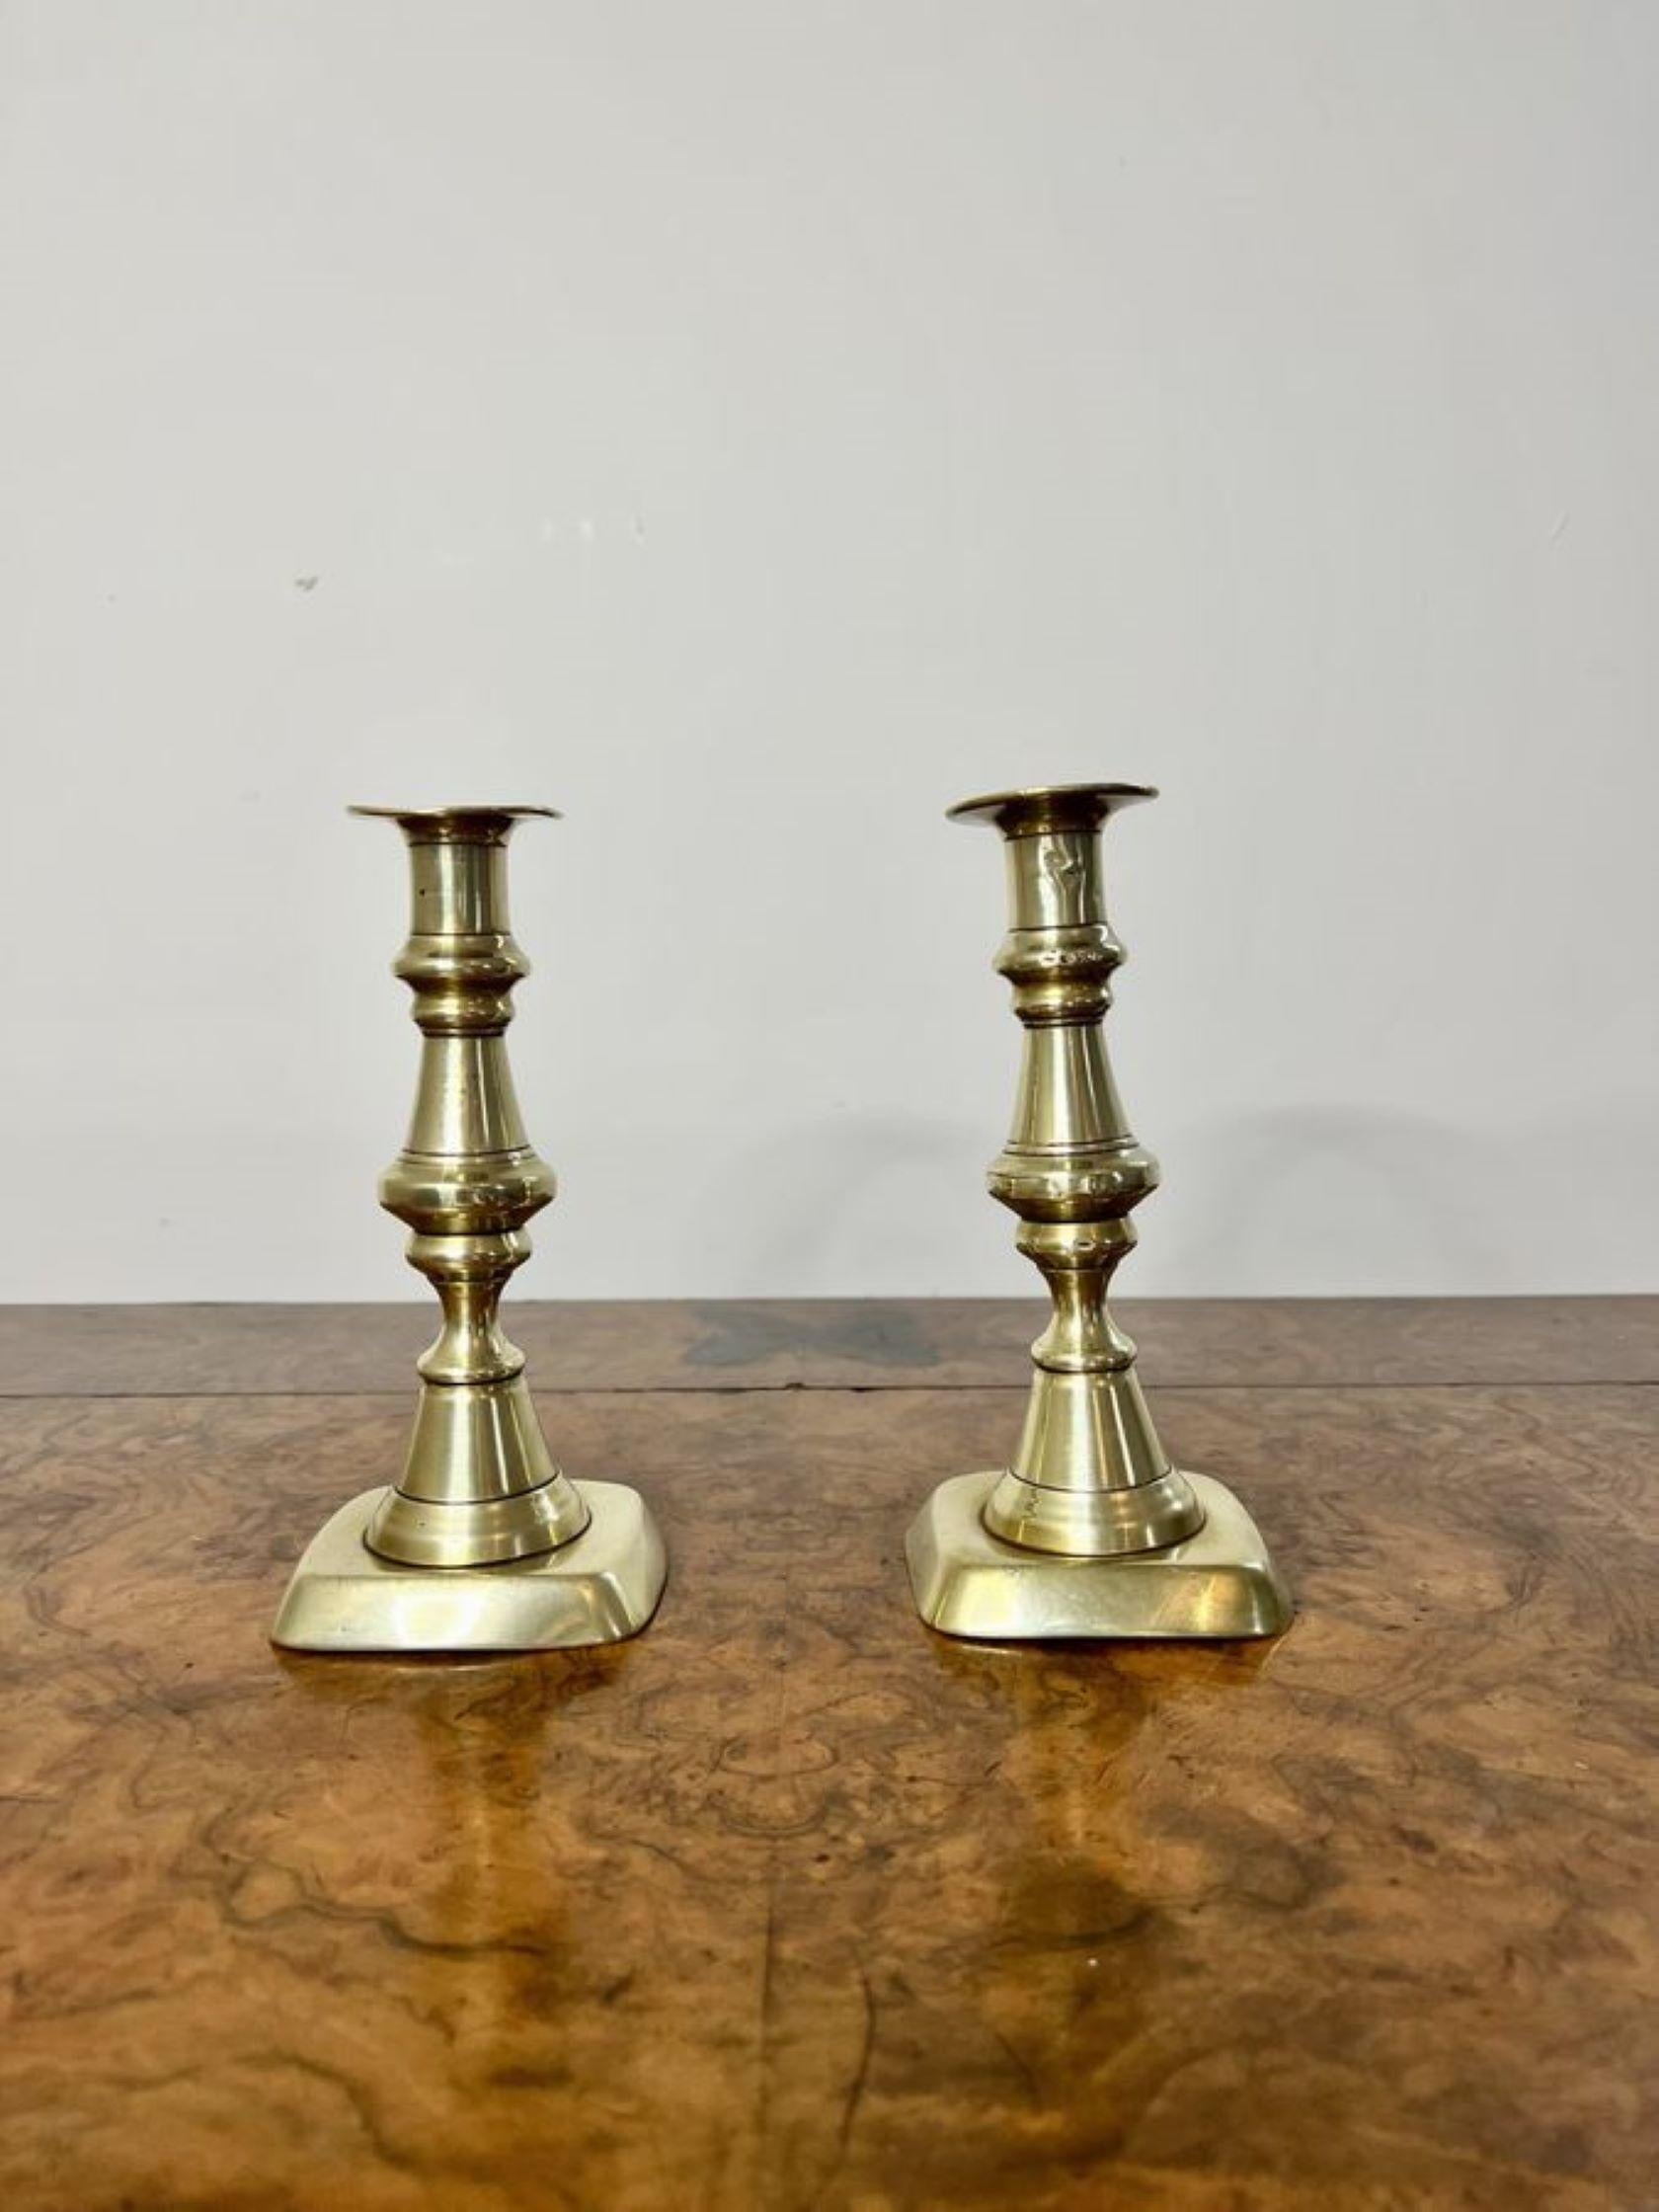 Schönes Paar antiker viktorianischer Messing-Kerzenhalter mit einem schönen Paar antiker Messing-Kerzenhalter mit gedrehten geformten Säulen, die auf quadratischen Basen stehen.

D. 1860